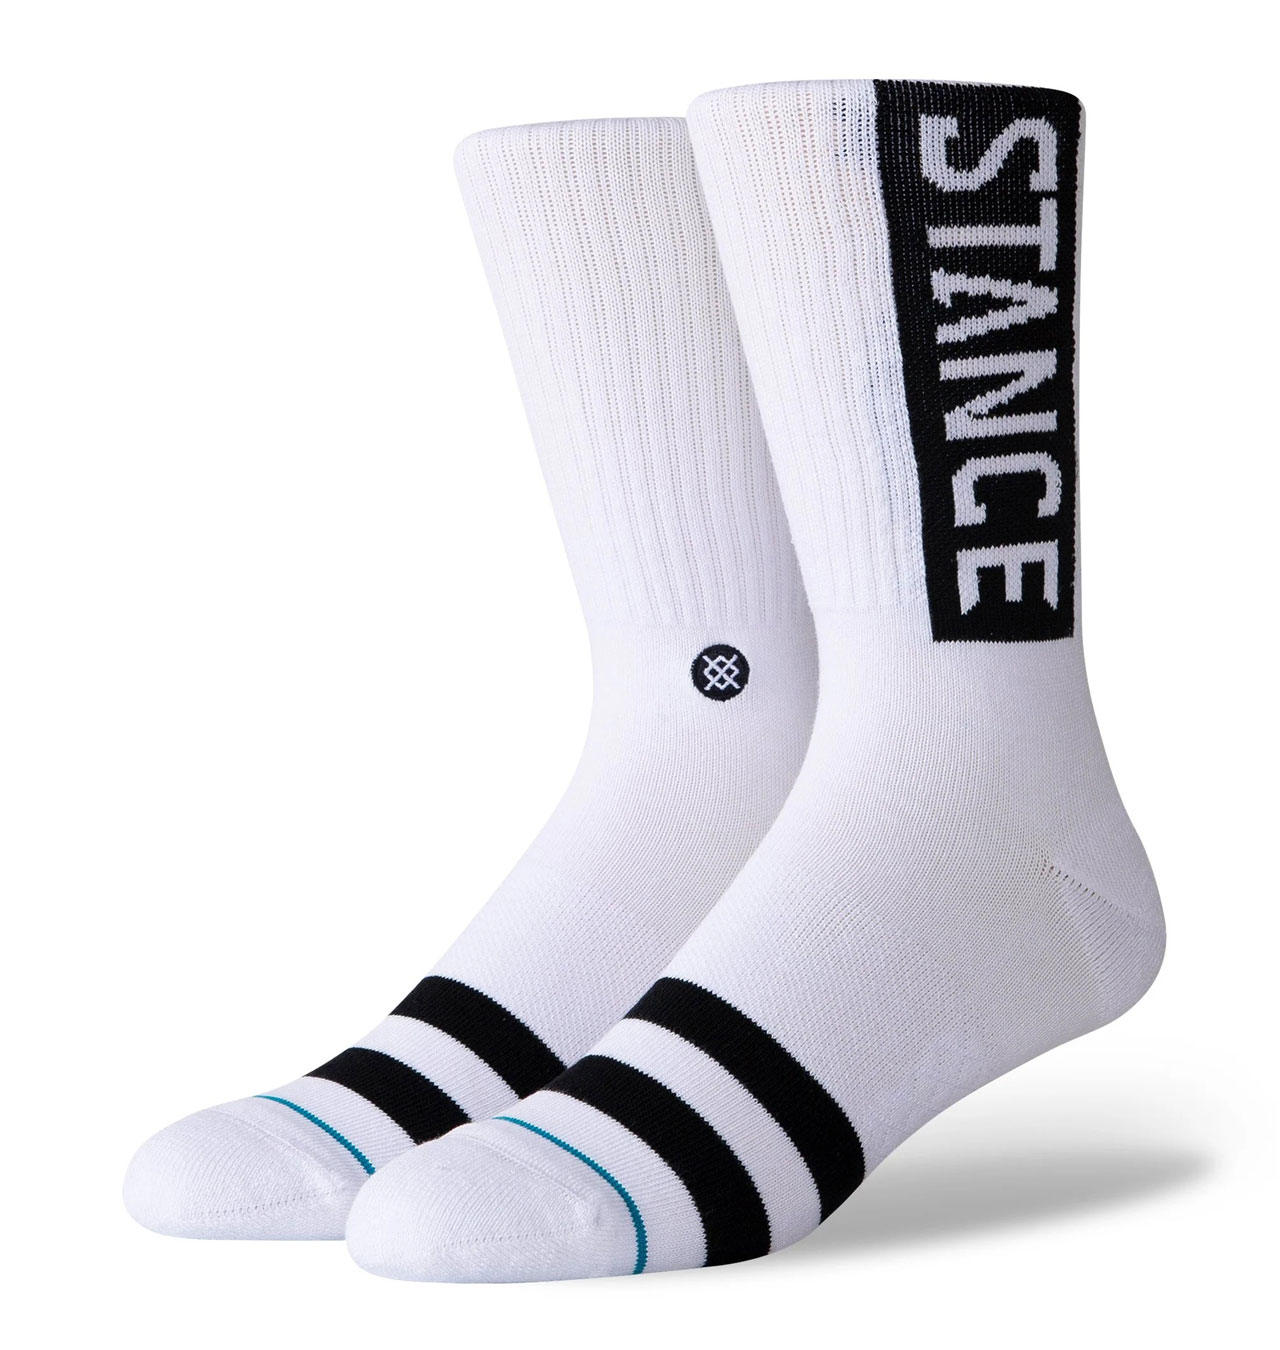 Stance - OG Socks - White/Black